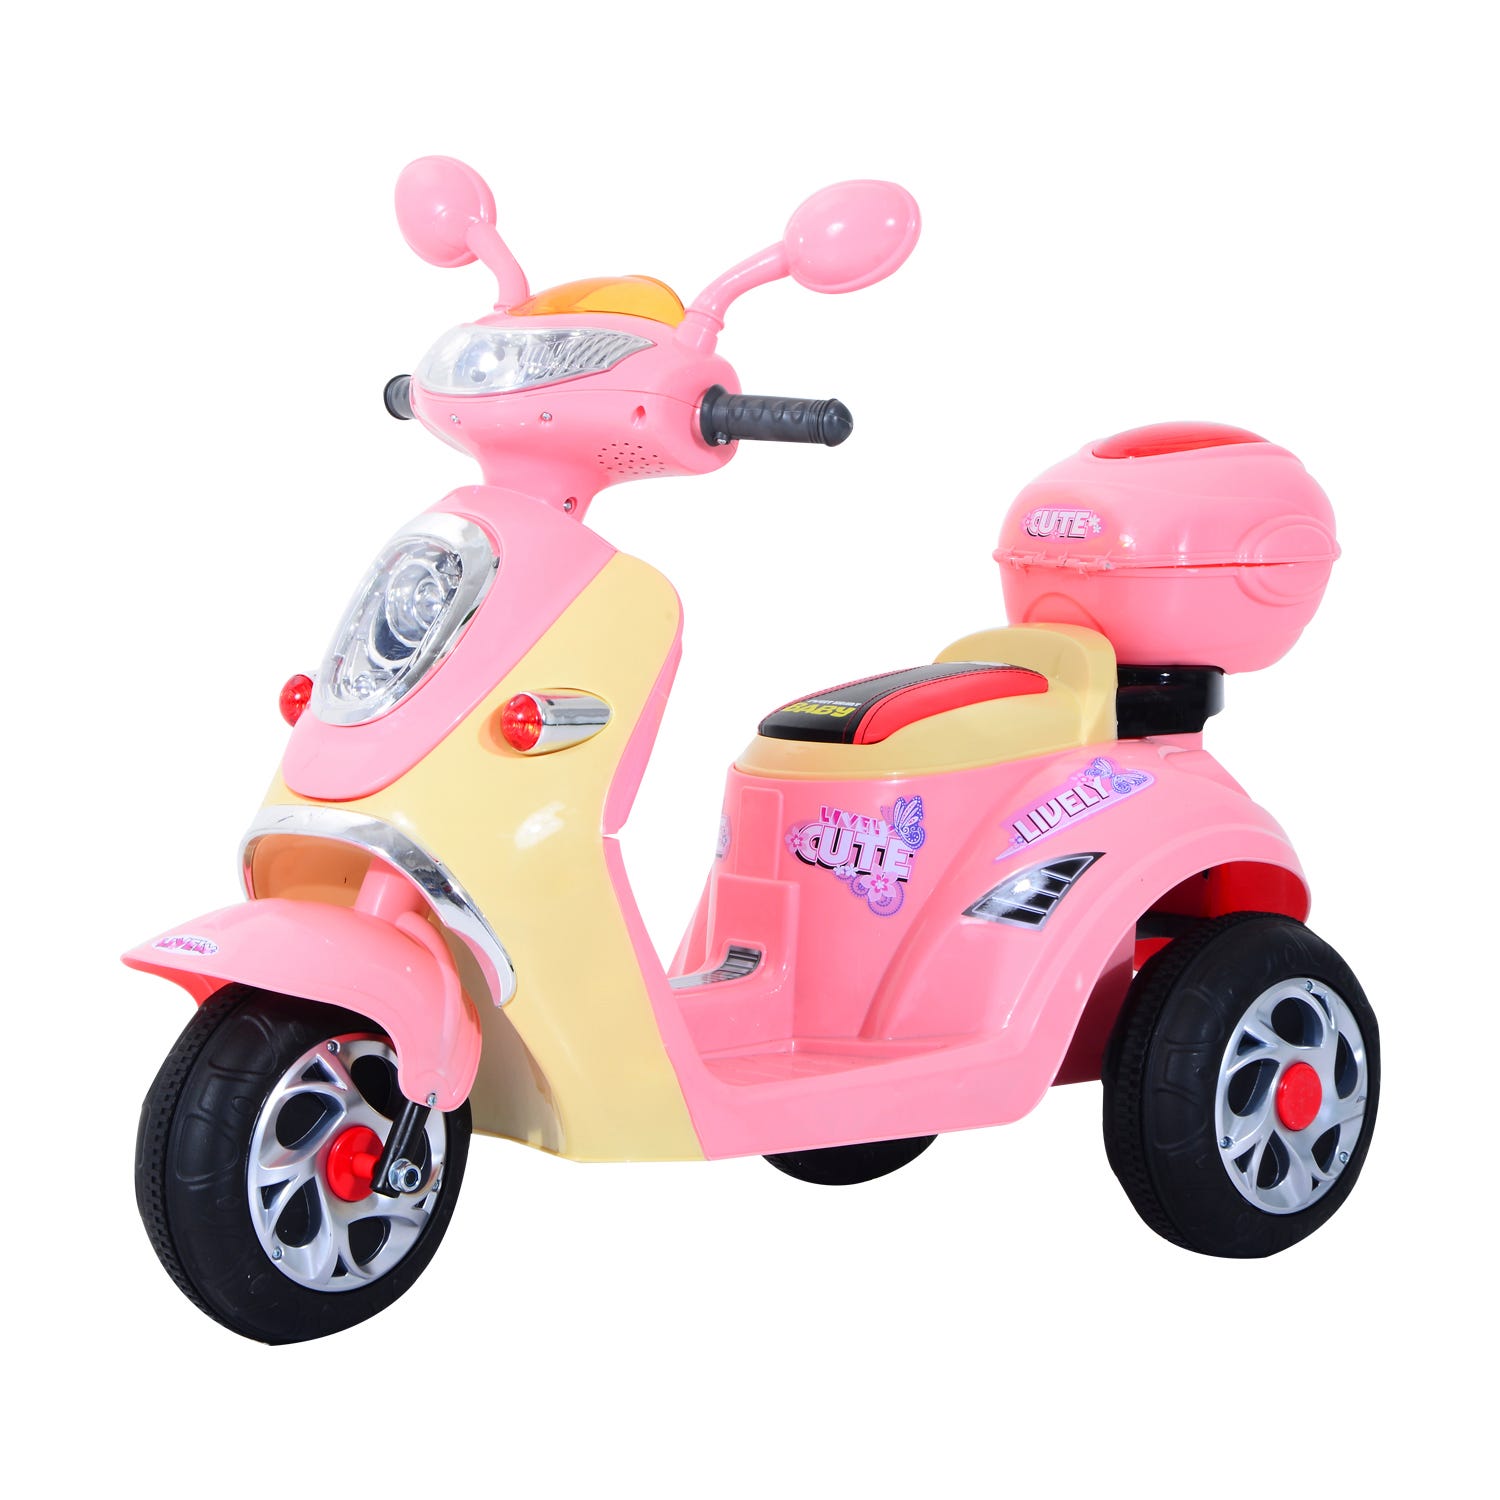 Les motos électriques pour enfants - Scoot-Elec